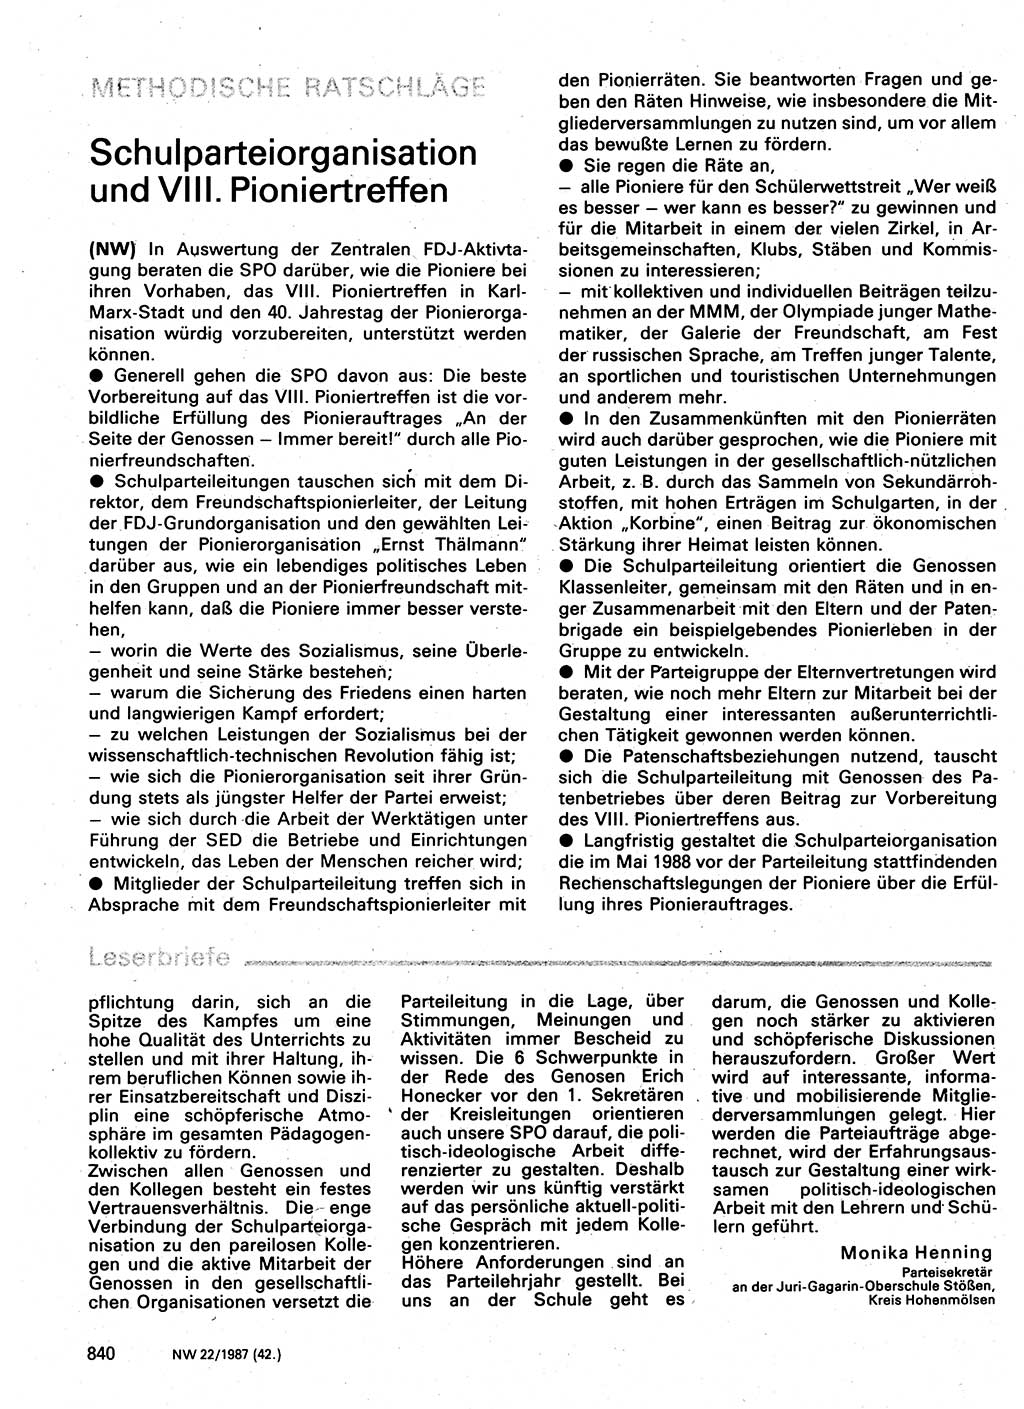 Neuer Weg (NW), Organ des Zentralkomitees (ZK) der SED (Sozialistische Einheitspartei Deutschlands) für Fragen des Parteilebens, 42. Jahrgang [Deutsche Demokratische Republik (DDR)] 1987, Seite 840 (NW ZK SED DDR 1987, S. 840)